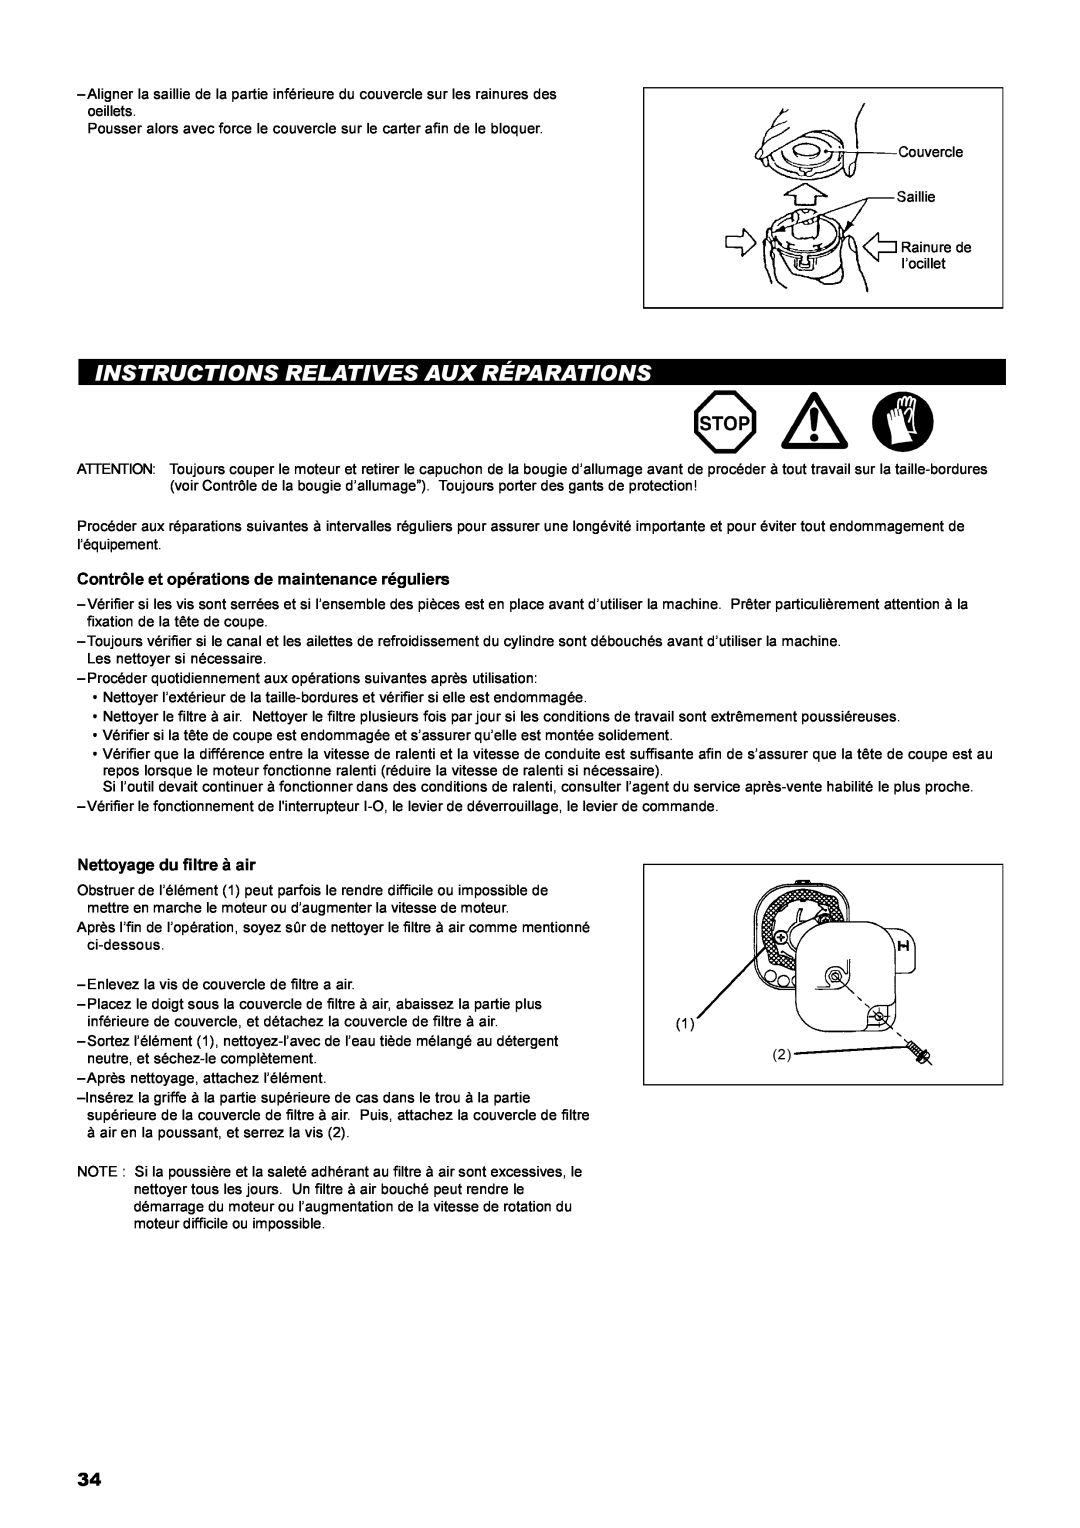 Dolmar MS-22C instruction manual Instructions Relatives Aux Réparations, Contrôle et opérations de maintenance réguliers 